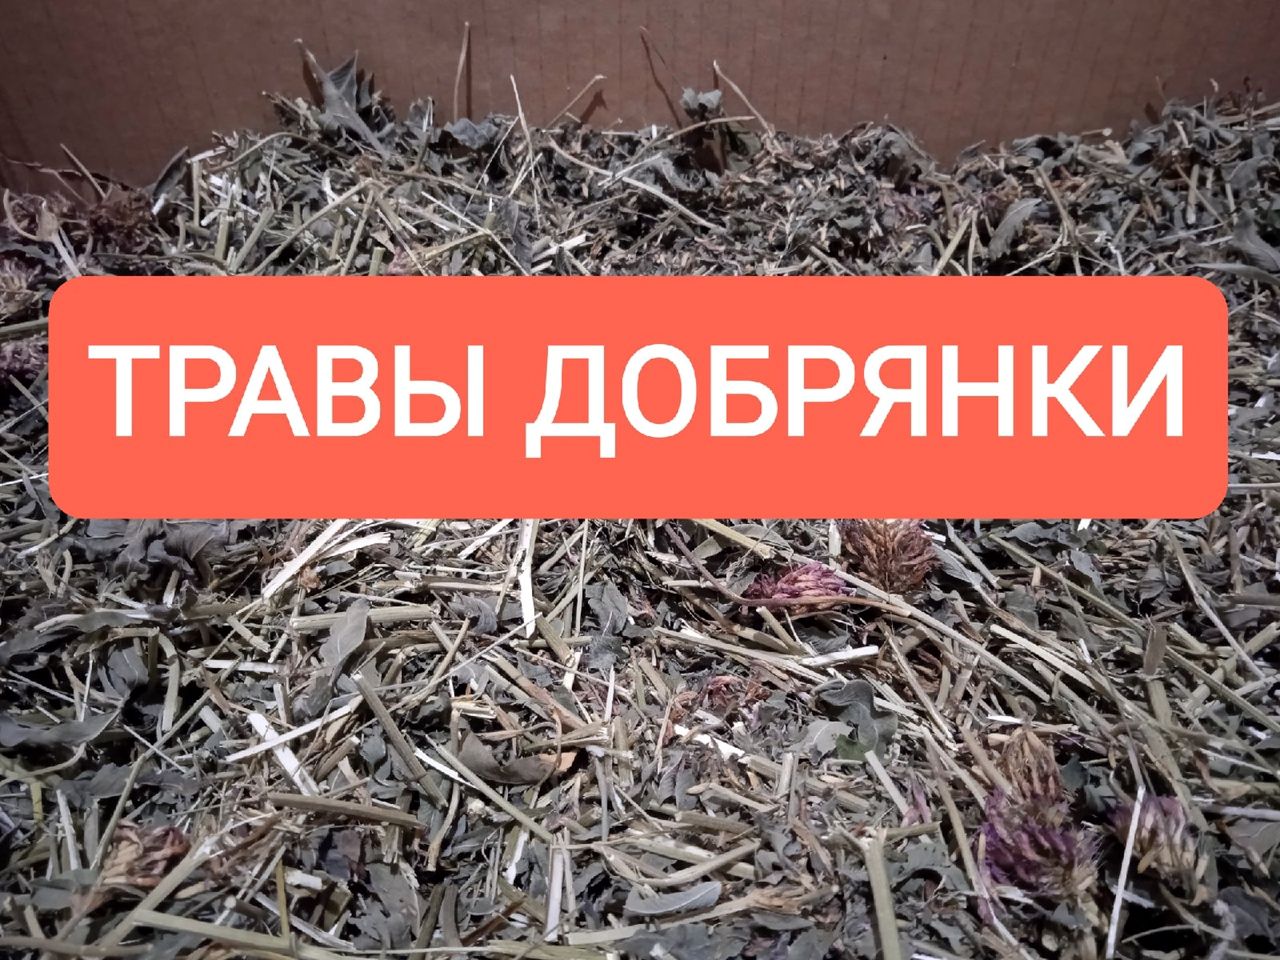 Советы приготовления трав от травников Добрянки (2).jpg